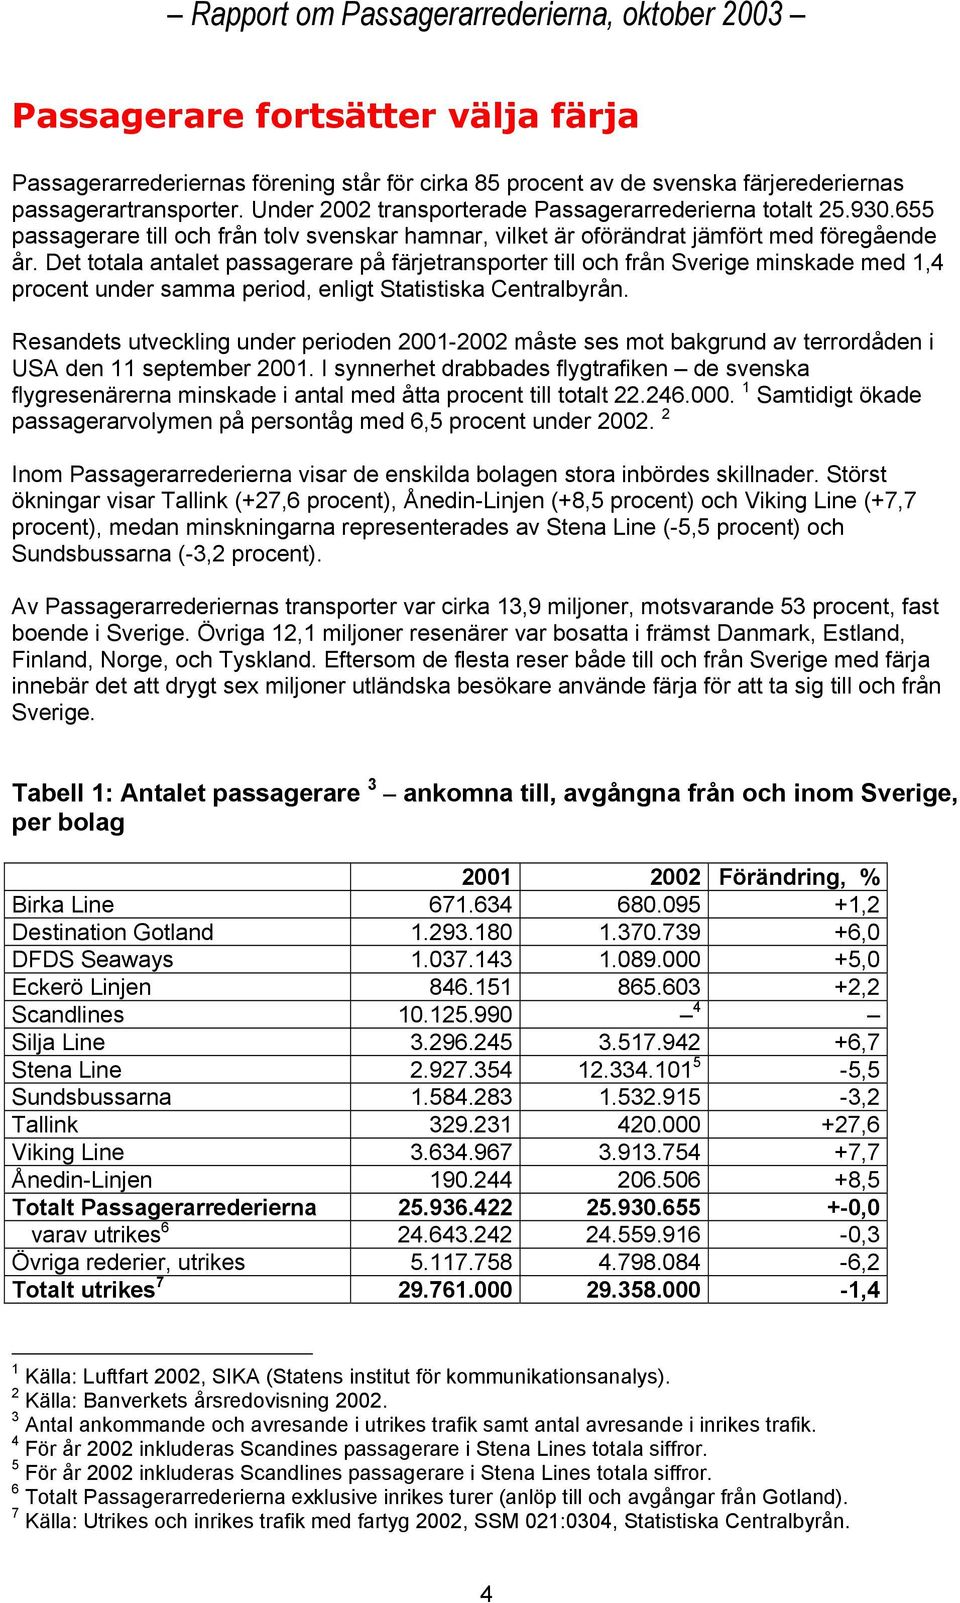 Det totala antalet passagerare på färjetransporter till och från Sverige minskade med 1,4 procent under samma period, enligt Statistiska Centralbyrån.